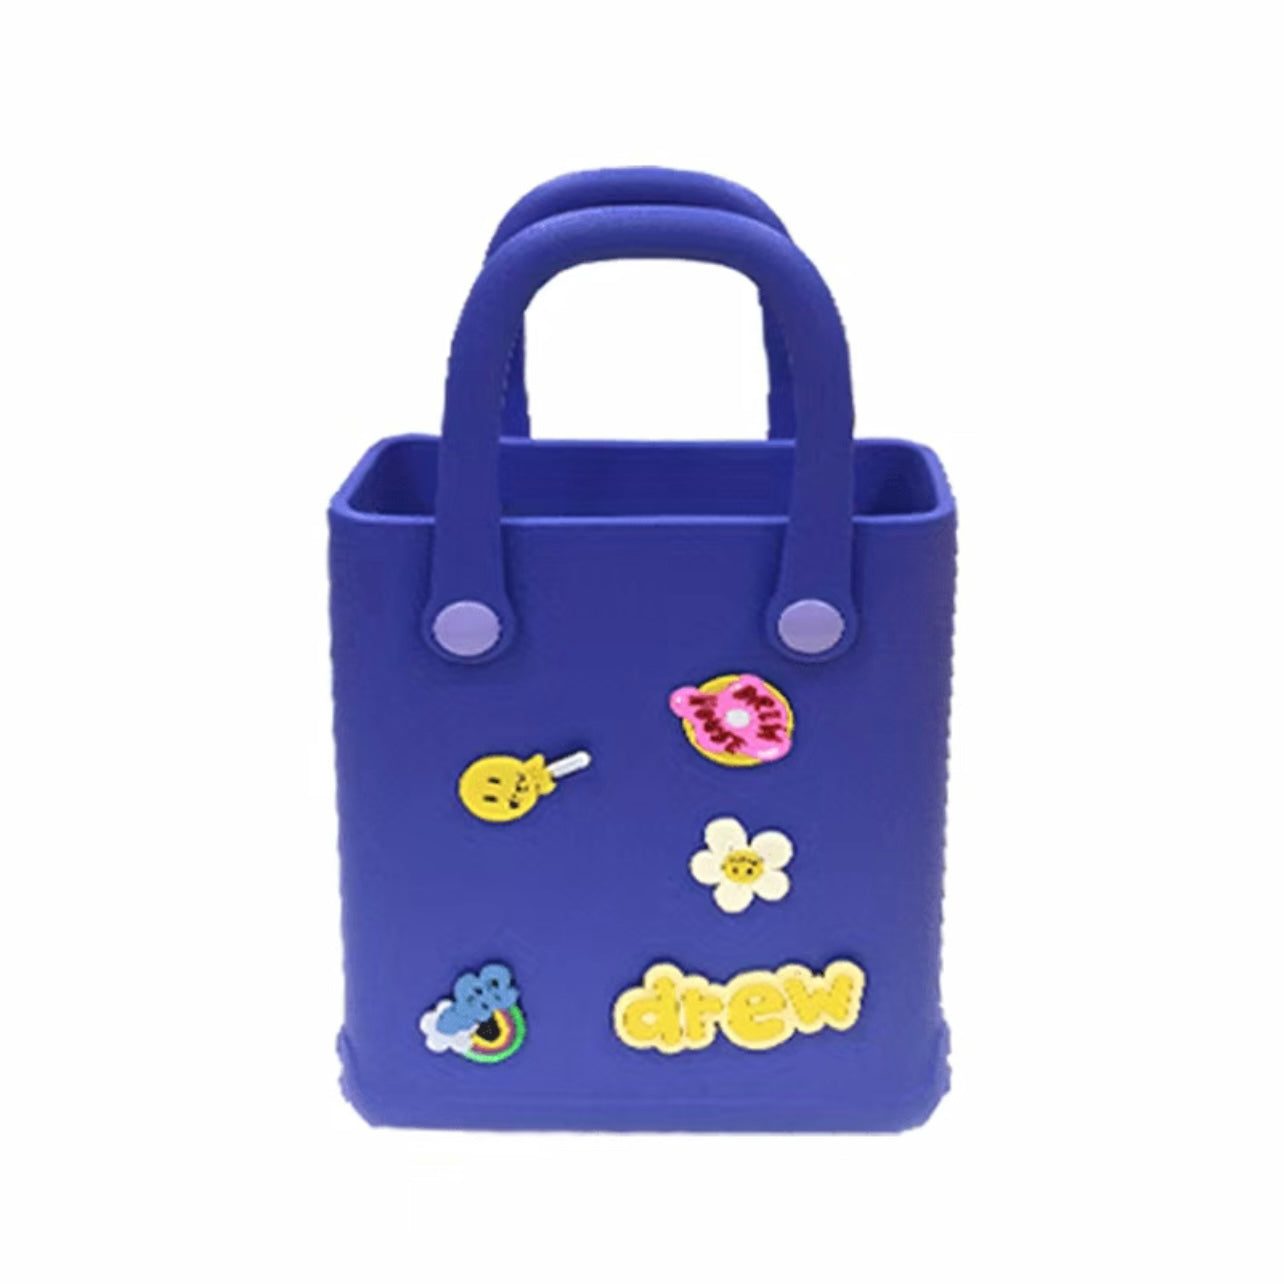 Kid’s Waterproof Tote Bags